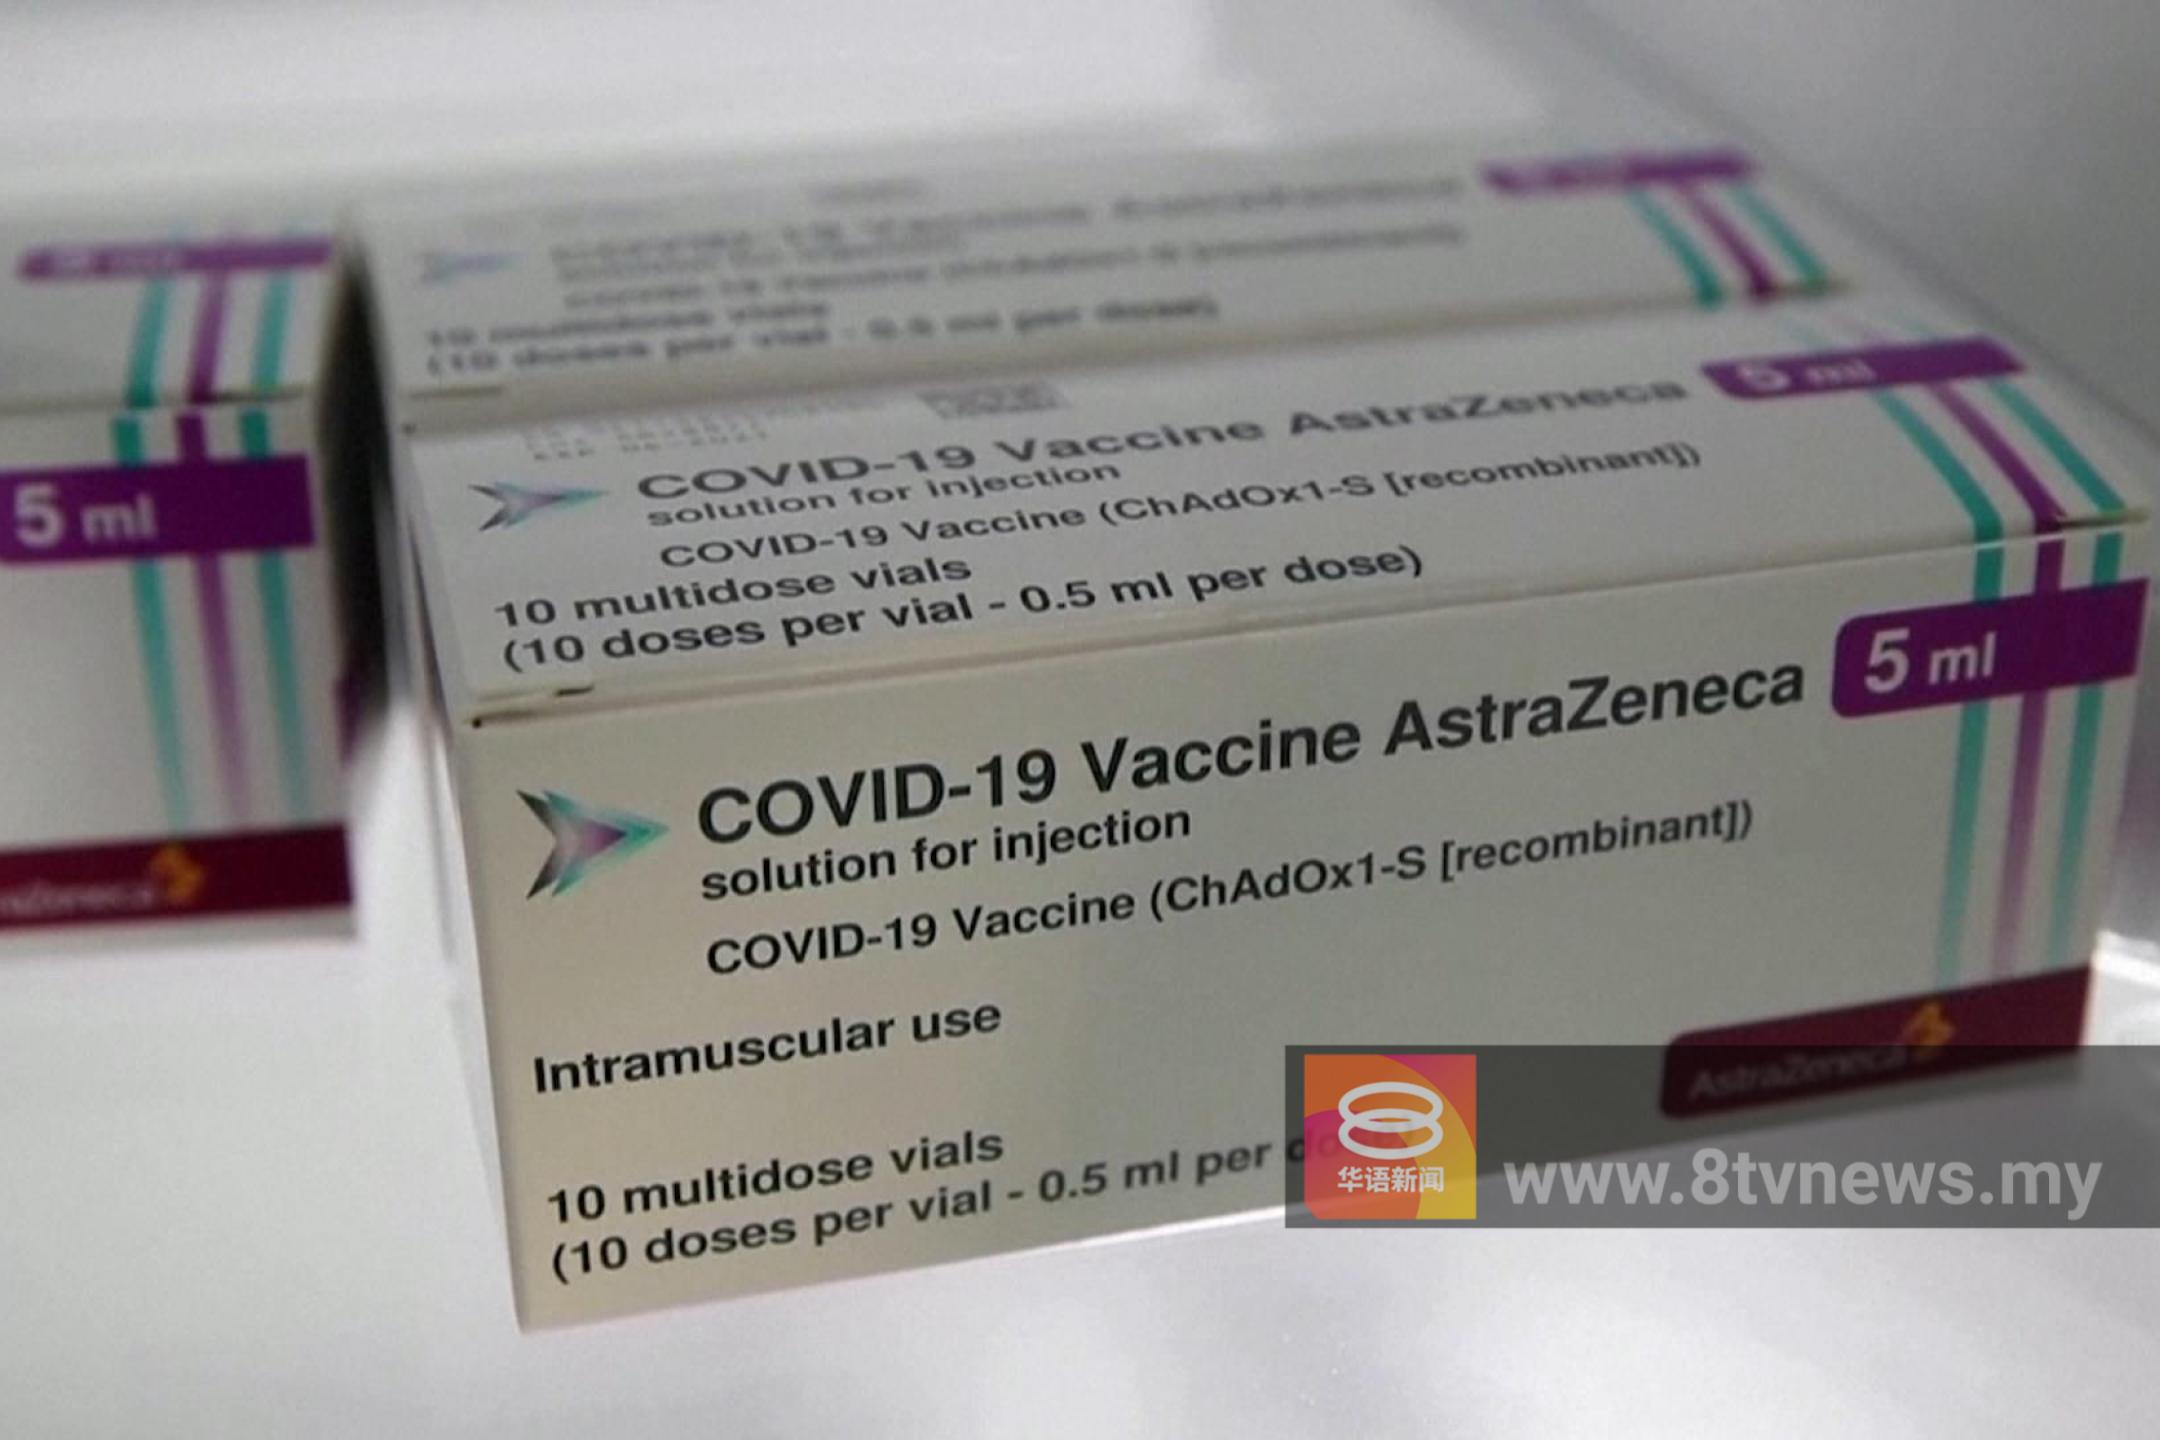 阿斯利康全球下架疫苗  指生产过剩无关副作用庭案